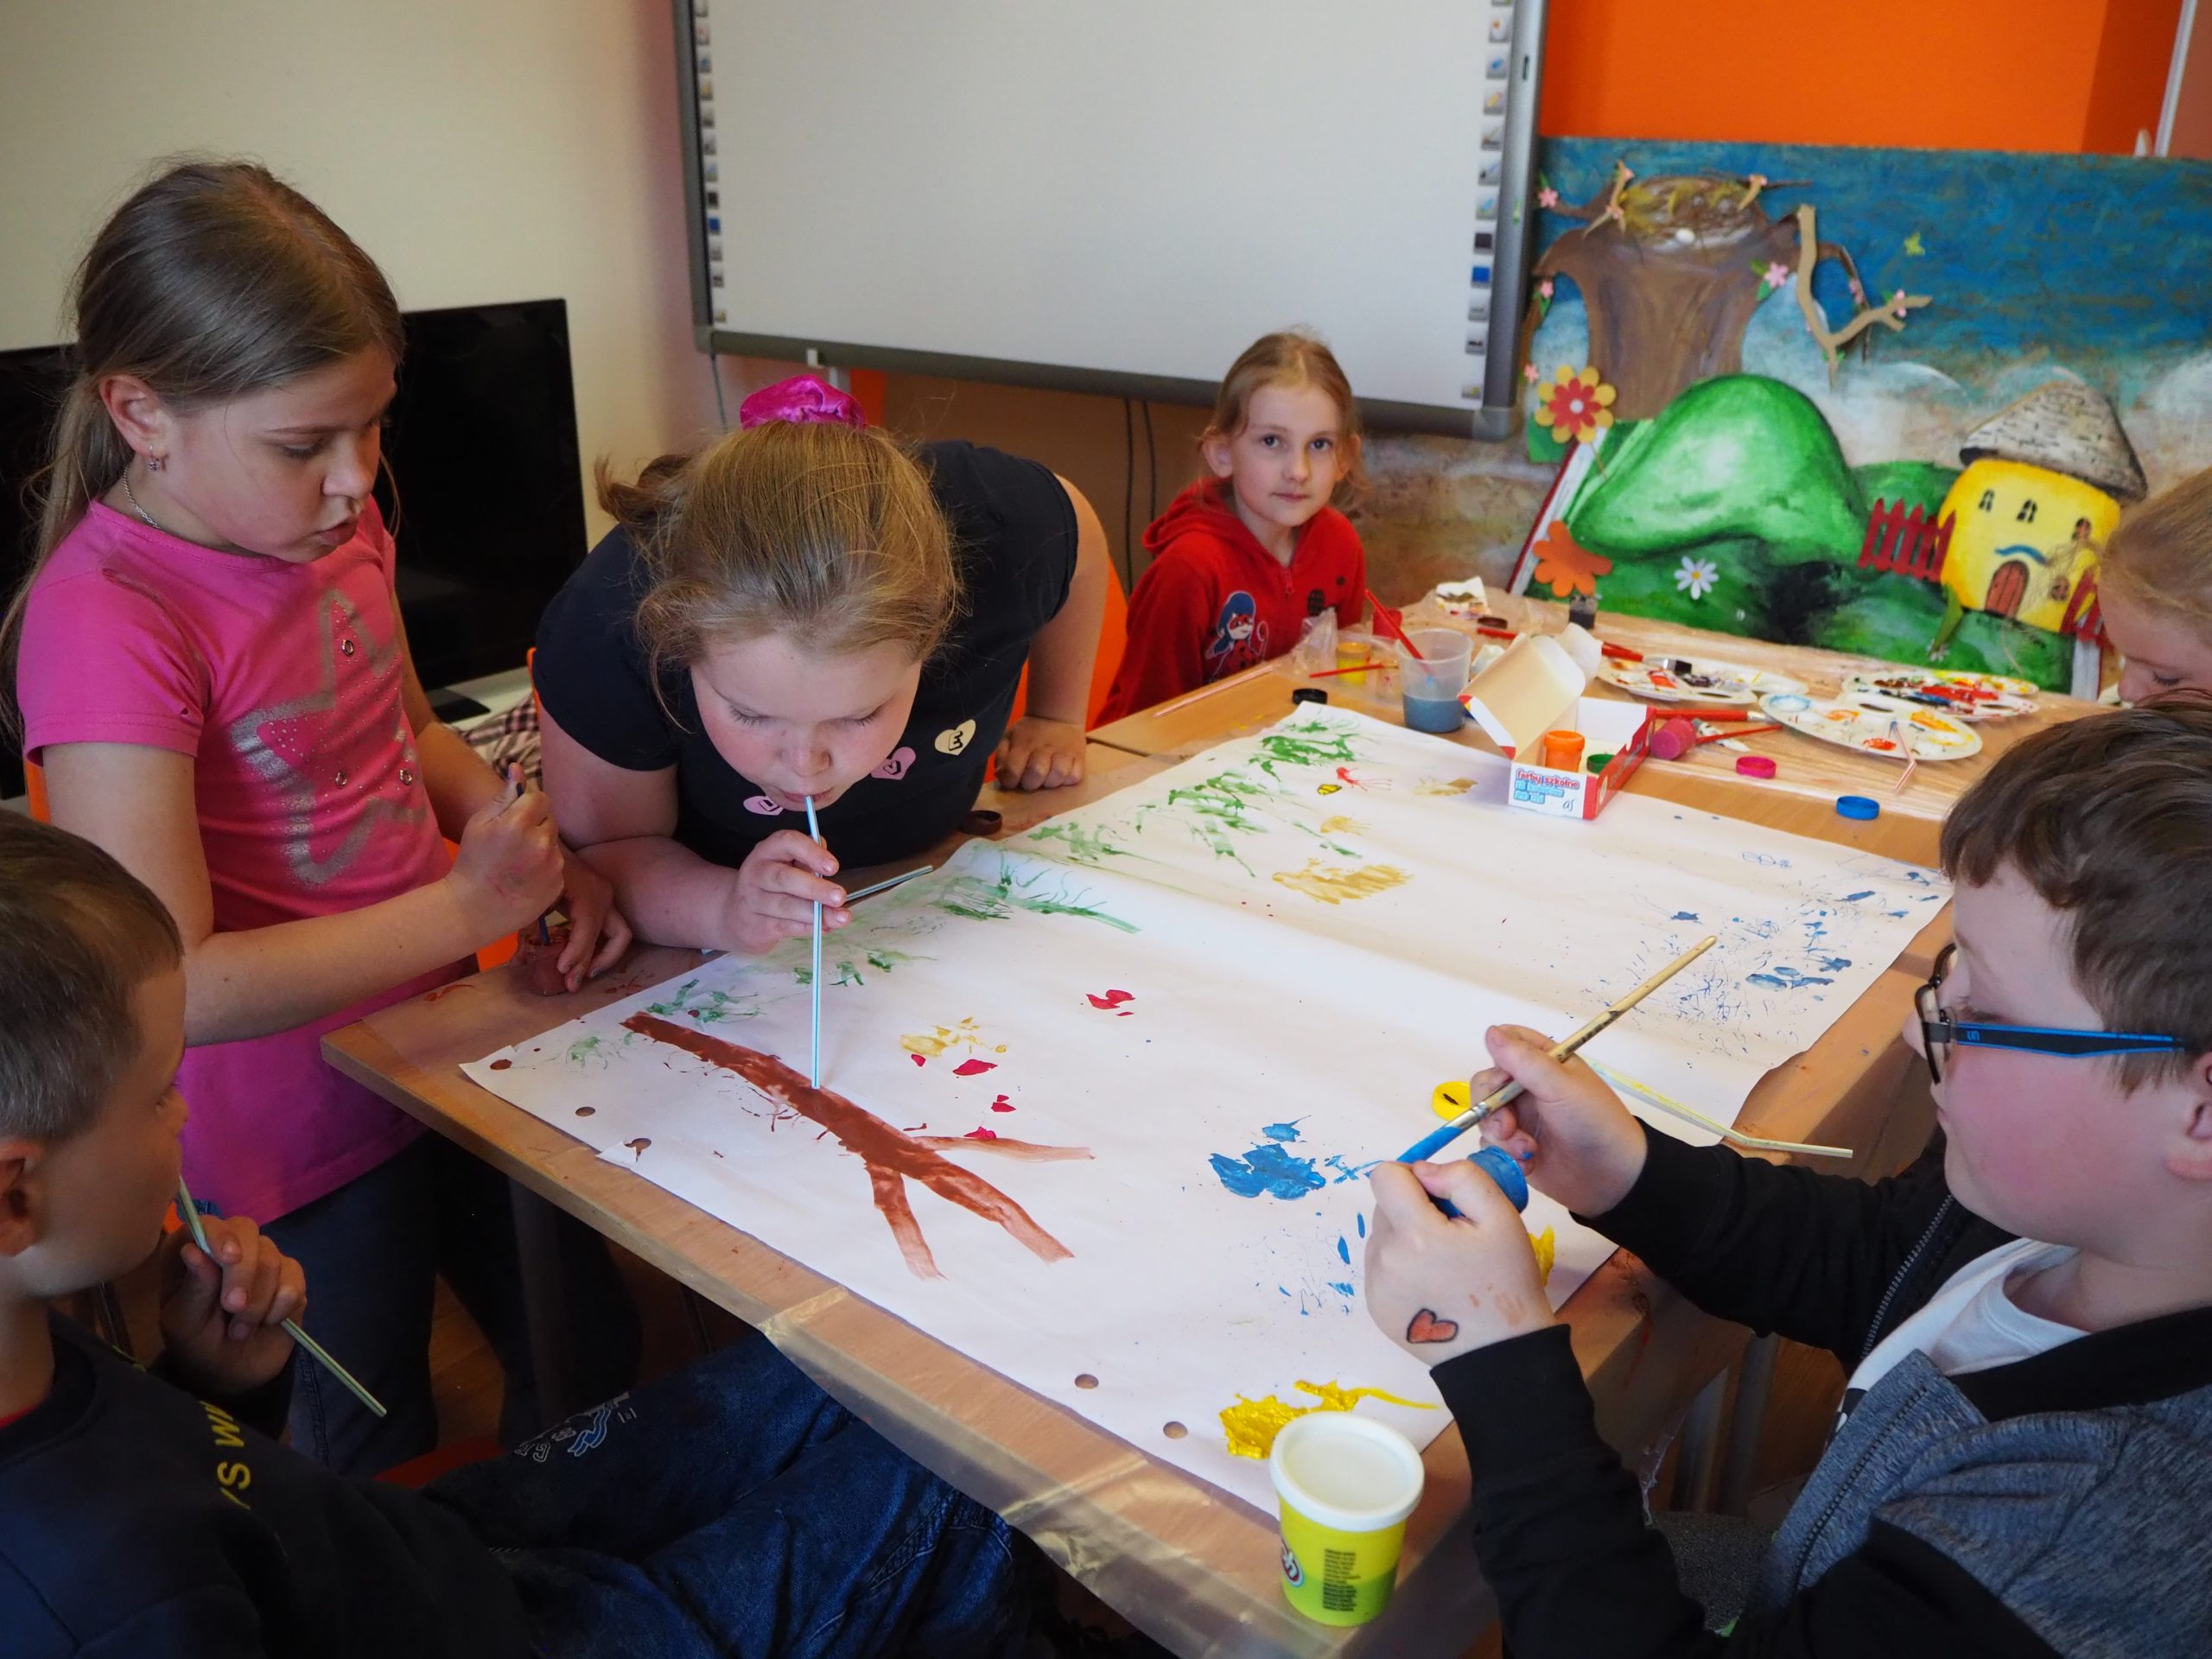 na zdjęciu grupa dzieci wspólnie maluje obrazek jedna z dziewczynek przy użyciu słomki rozdmuchuje farbę